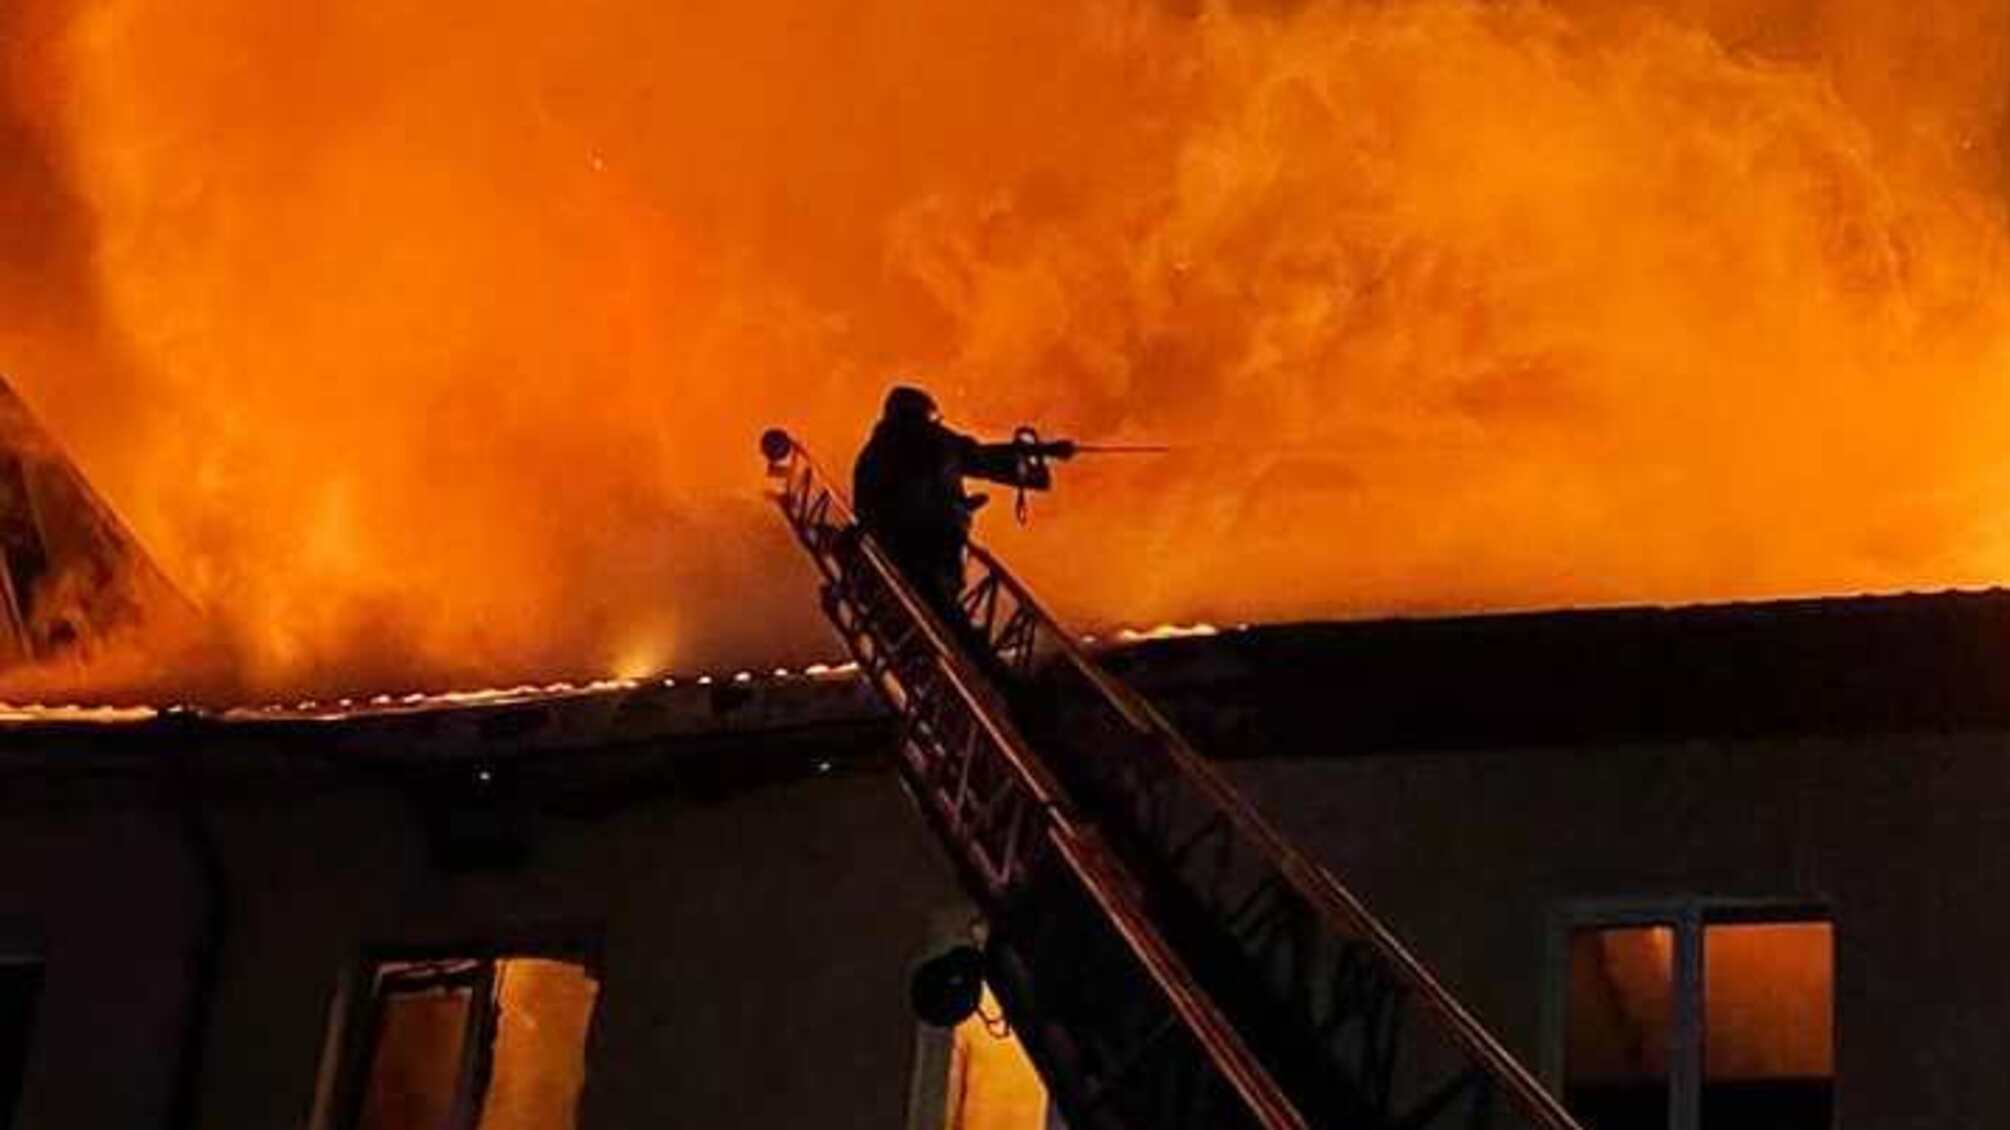 Одеська область: рятувальники ліквідували пожежу на СТО